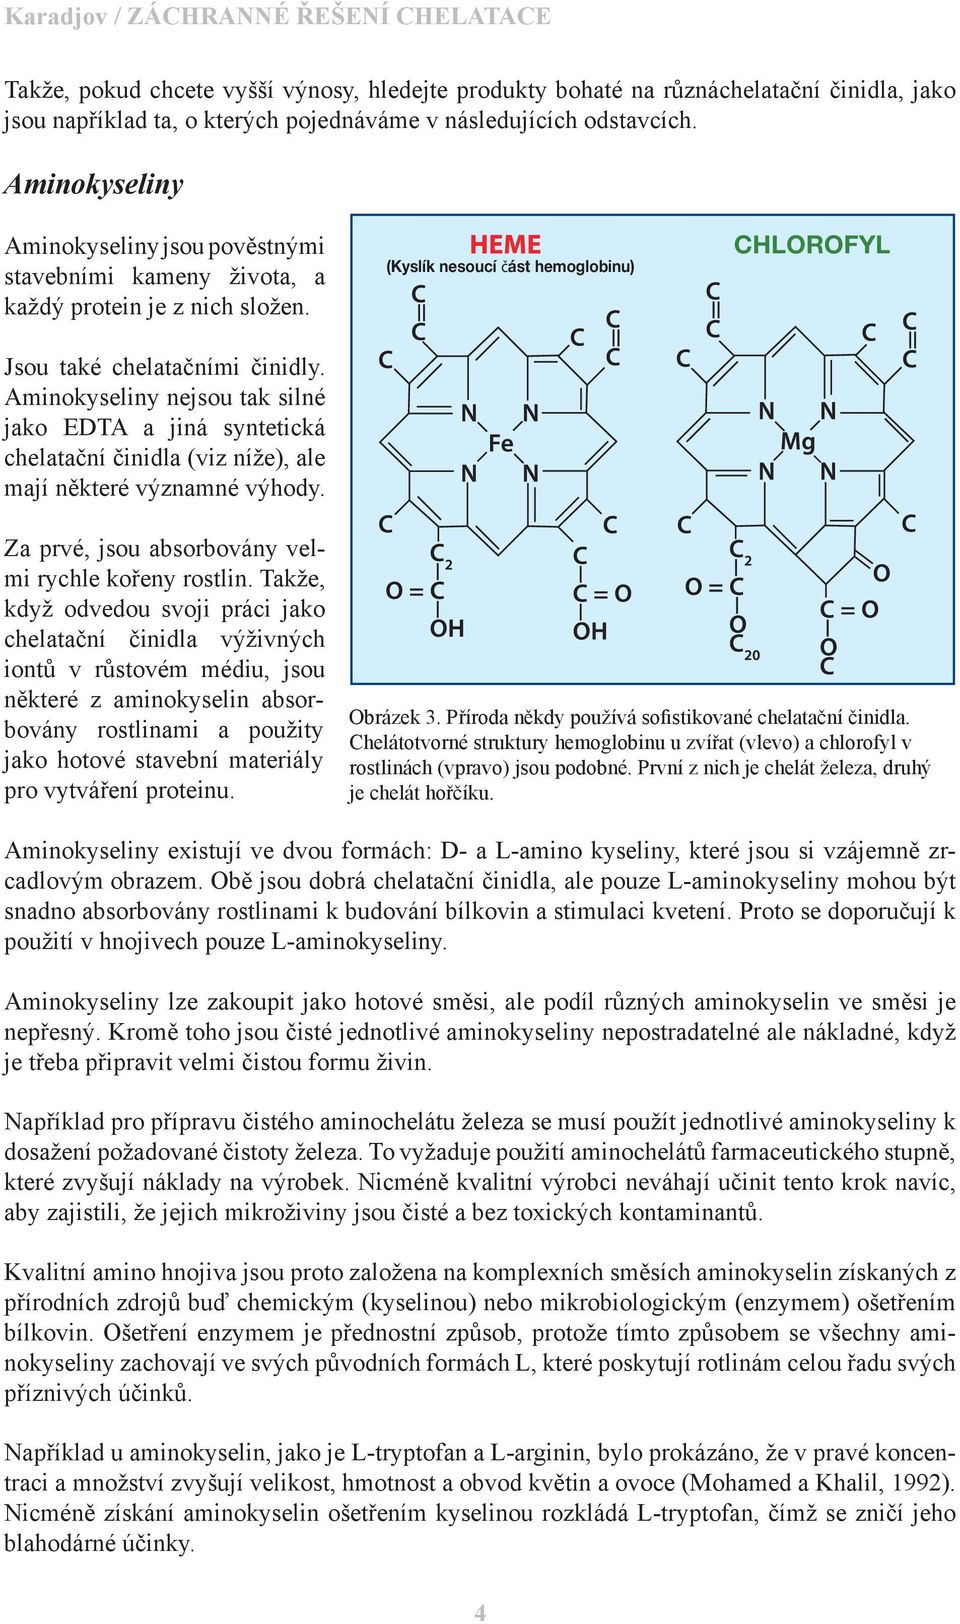 Aminokyseliny nejsou tak silné jako EDTA a jiná syntetická chelatační činidla (viz níže), ale mají některé významné výhody.